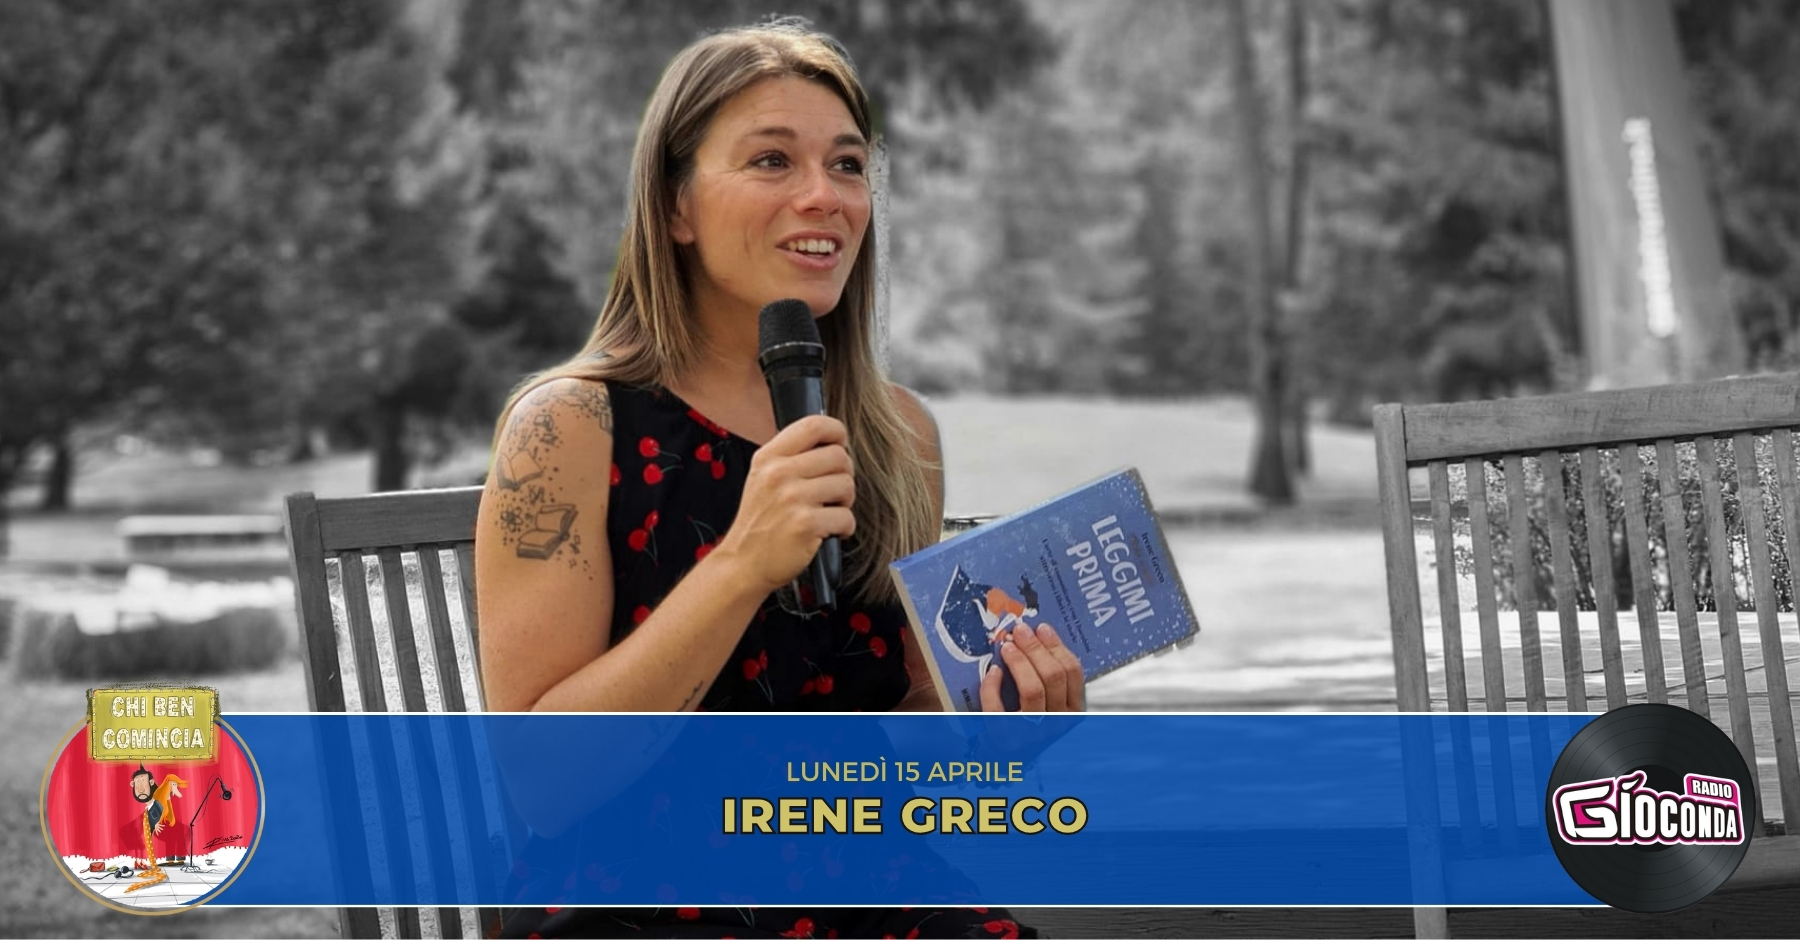 La scrittrice friulana Irene Greco. è l'ospite della nuova puntata di “Chi ben comincia” in onda lunedì 15 aprile alle 18.00.